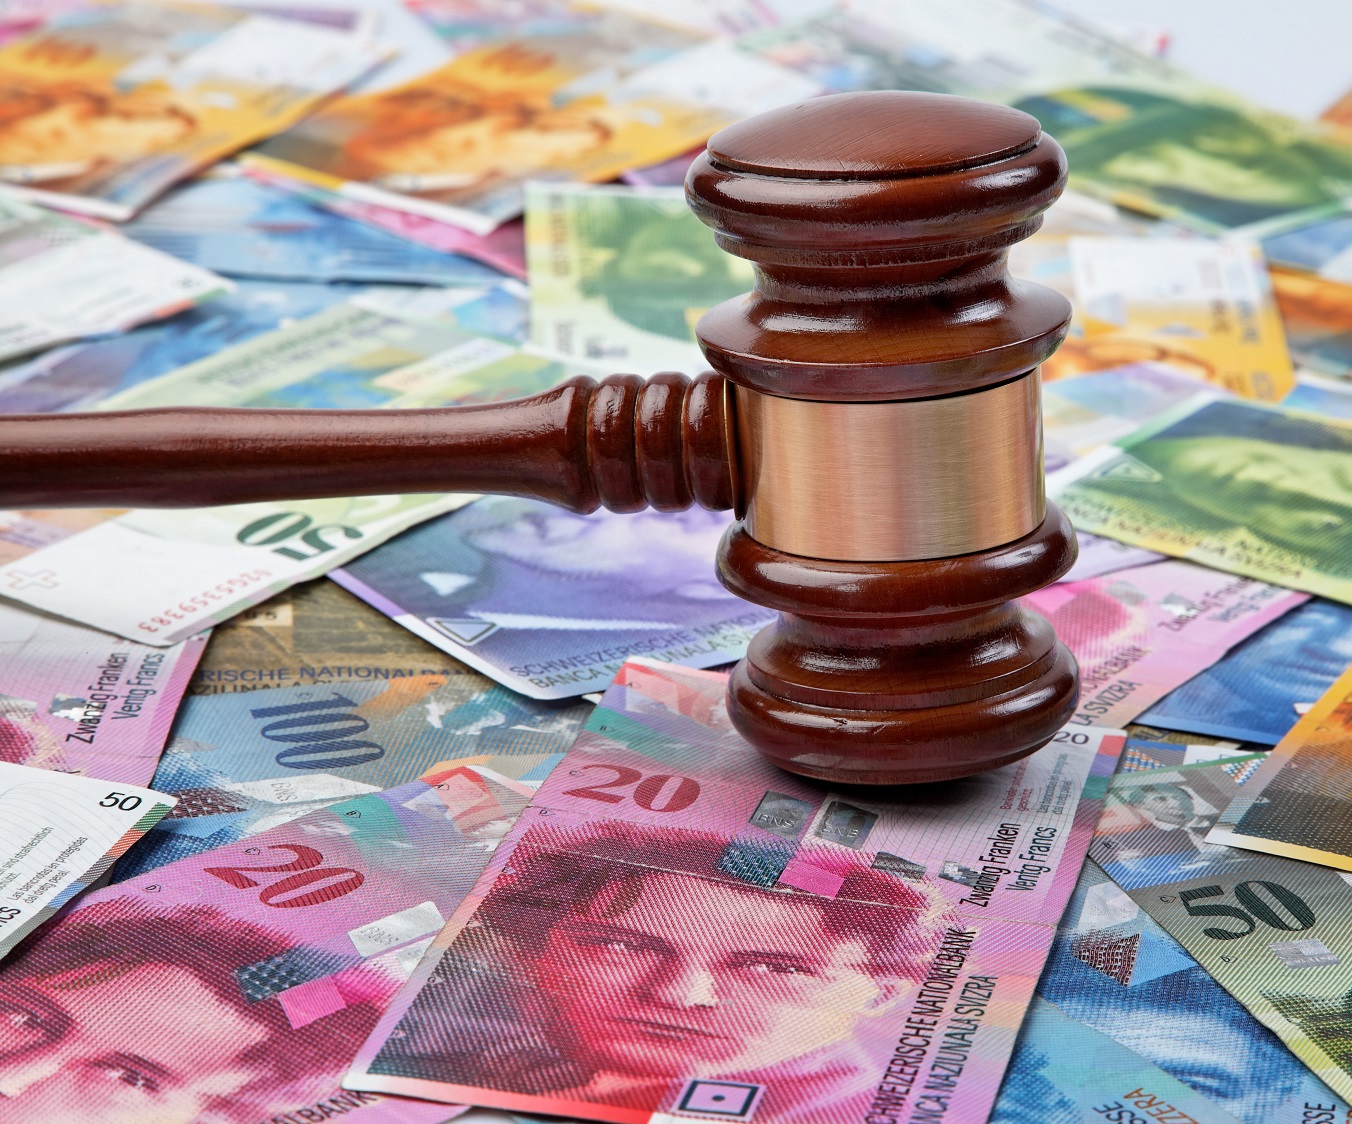 Sąd Najwyższy podjął uchwałę dotyczącą kredytów frankowych. Jakie zagadnienia zostały rozstrzygnięte?